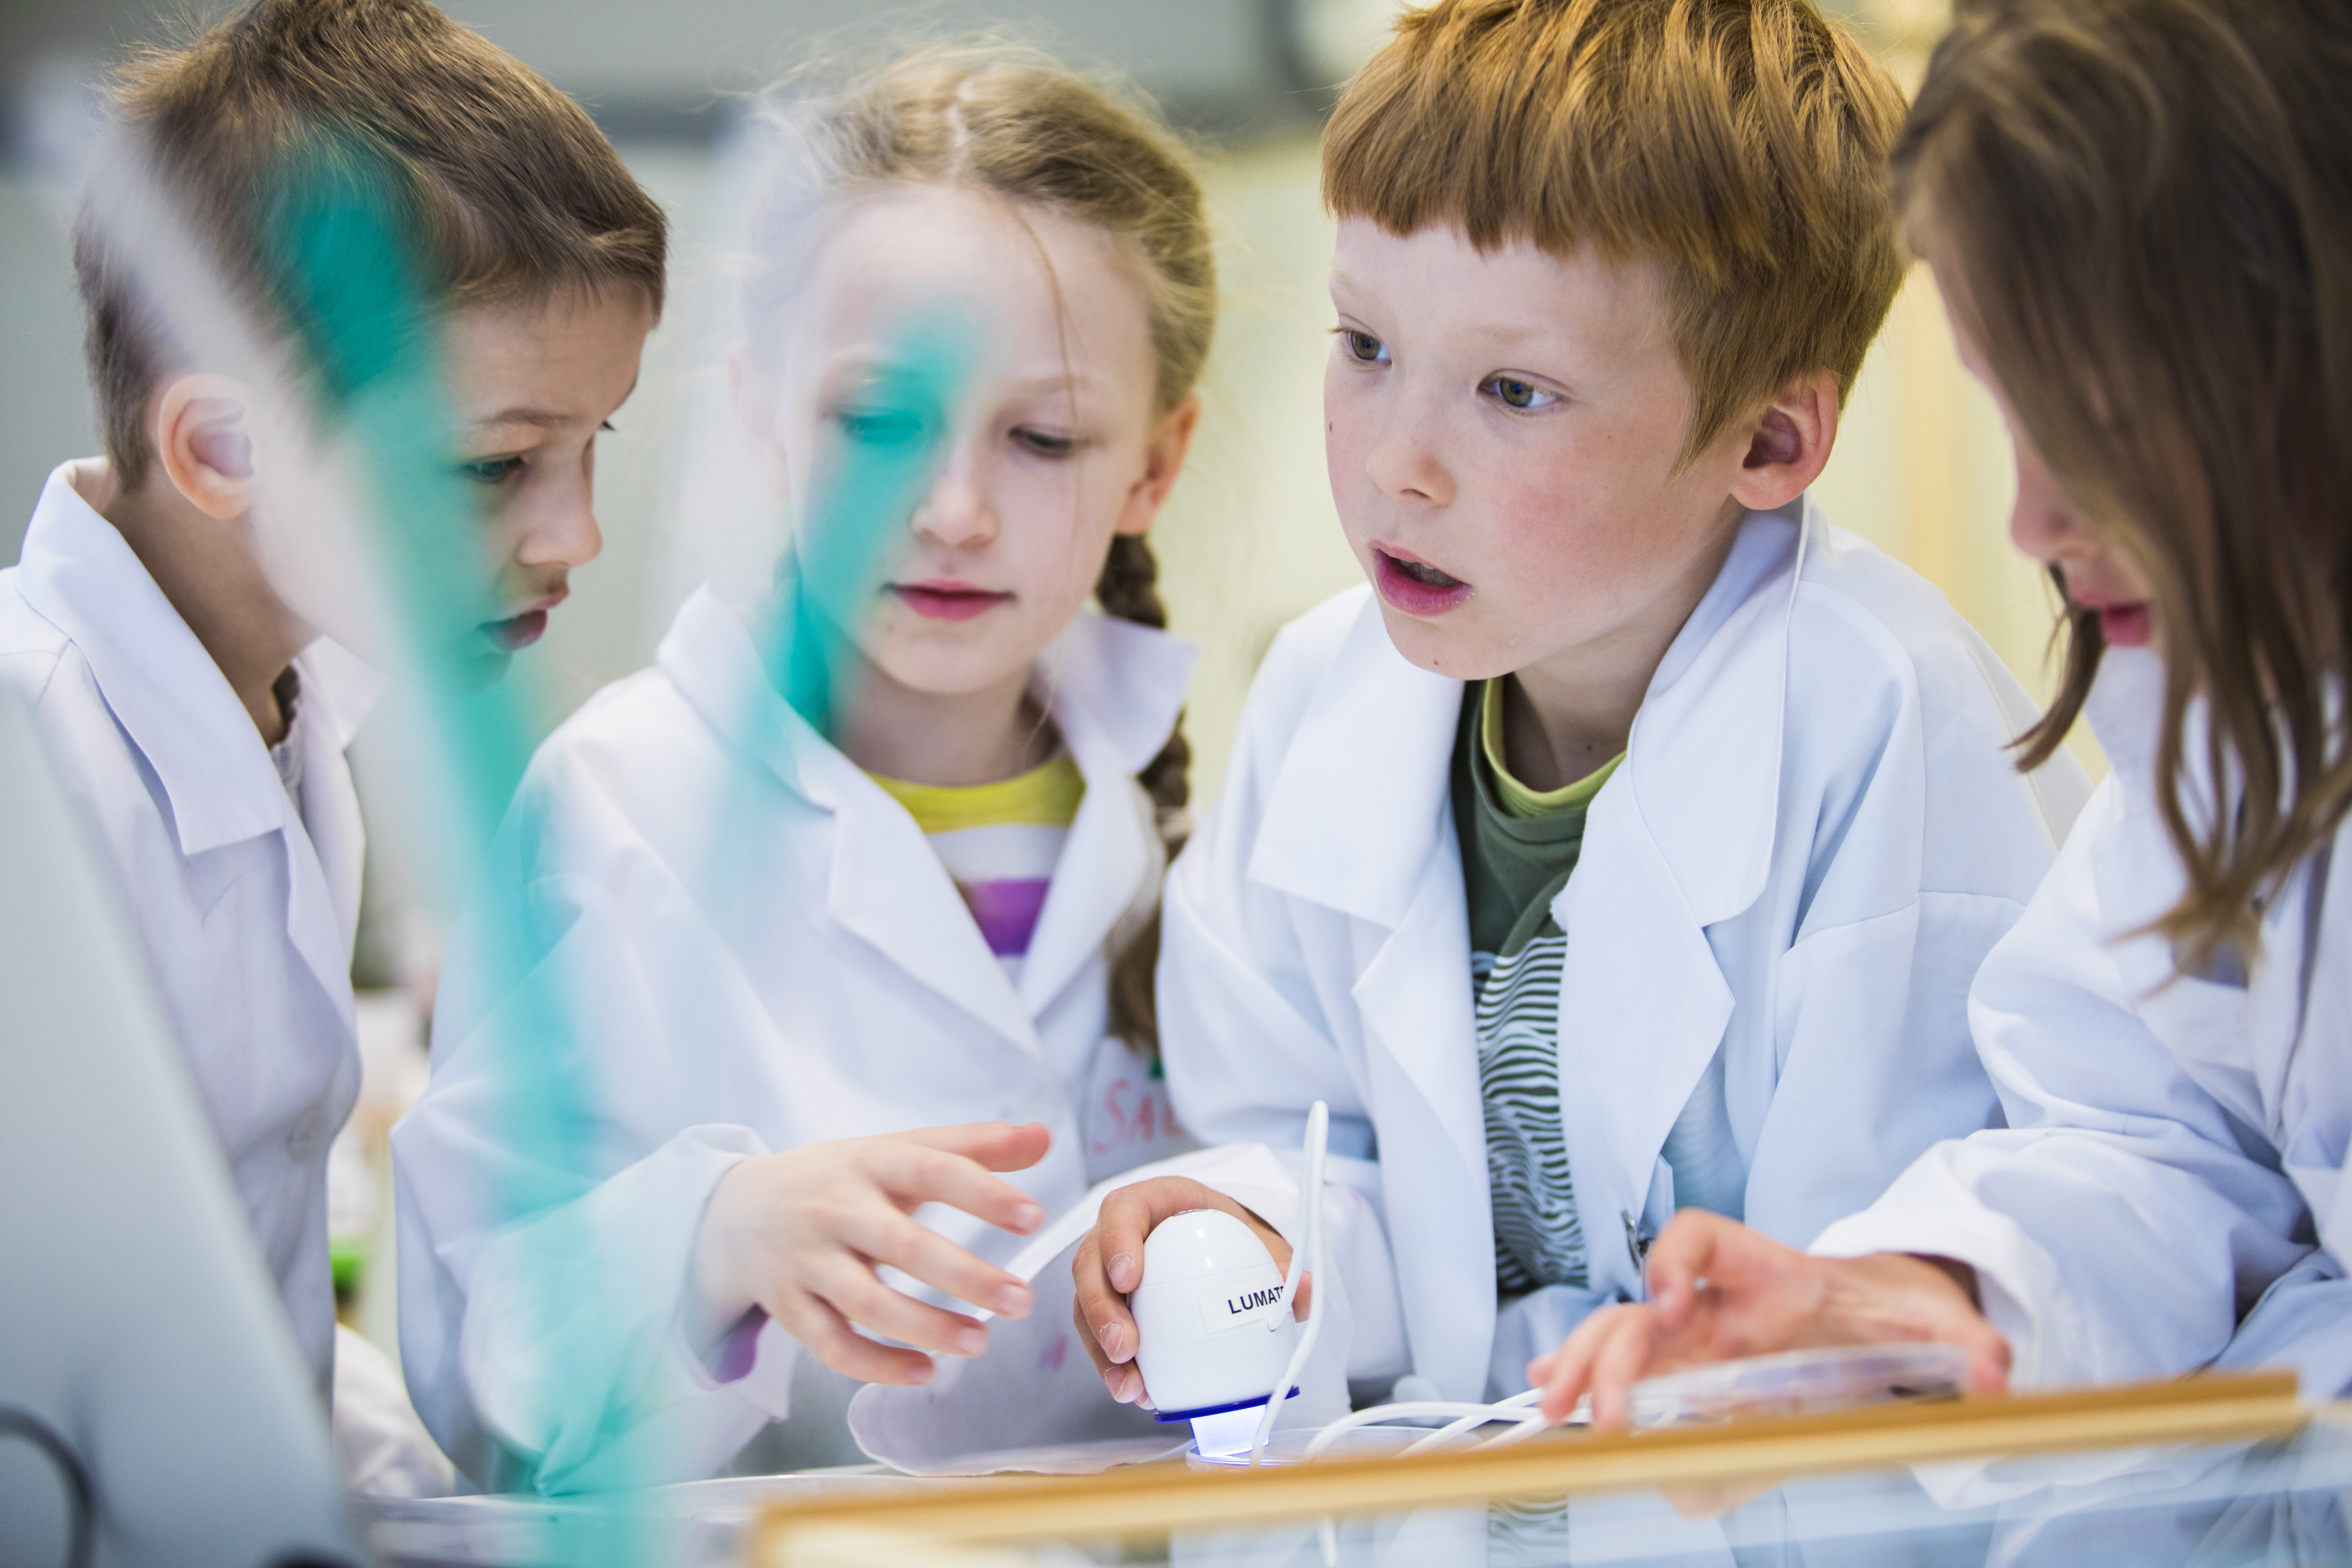 Valokuva, jossa neljä lasta tutkimassa yhdessä näytettä mikroskoopilla laboratoriotakit päällä.